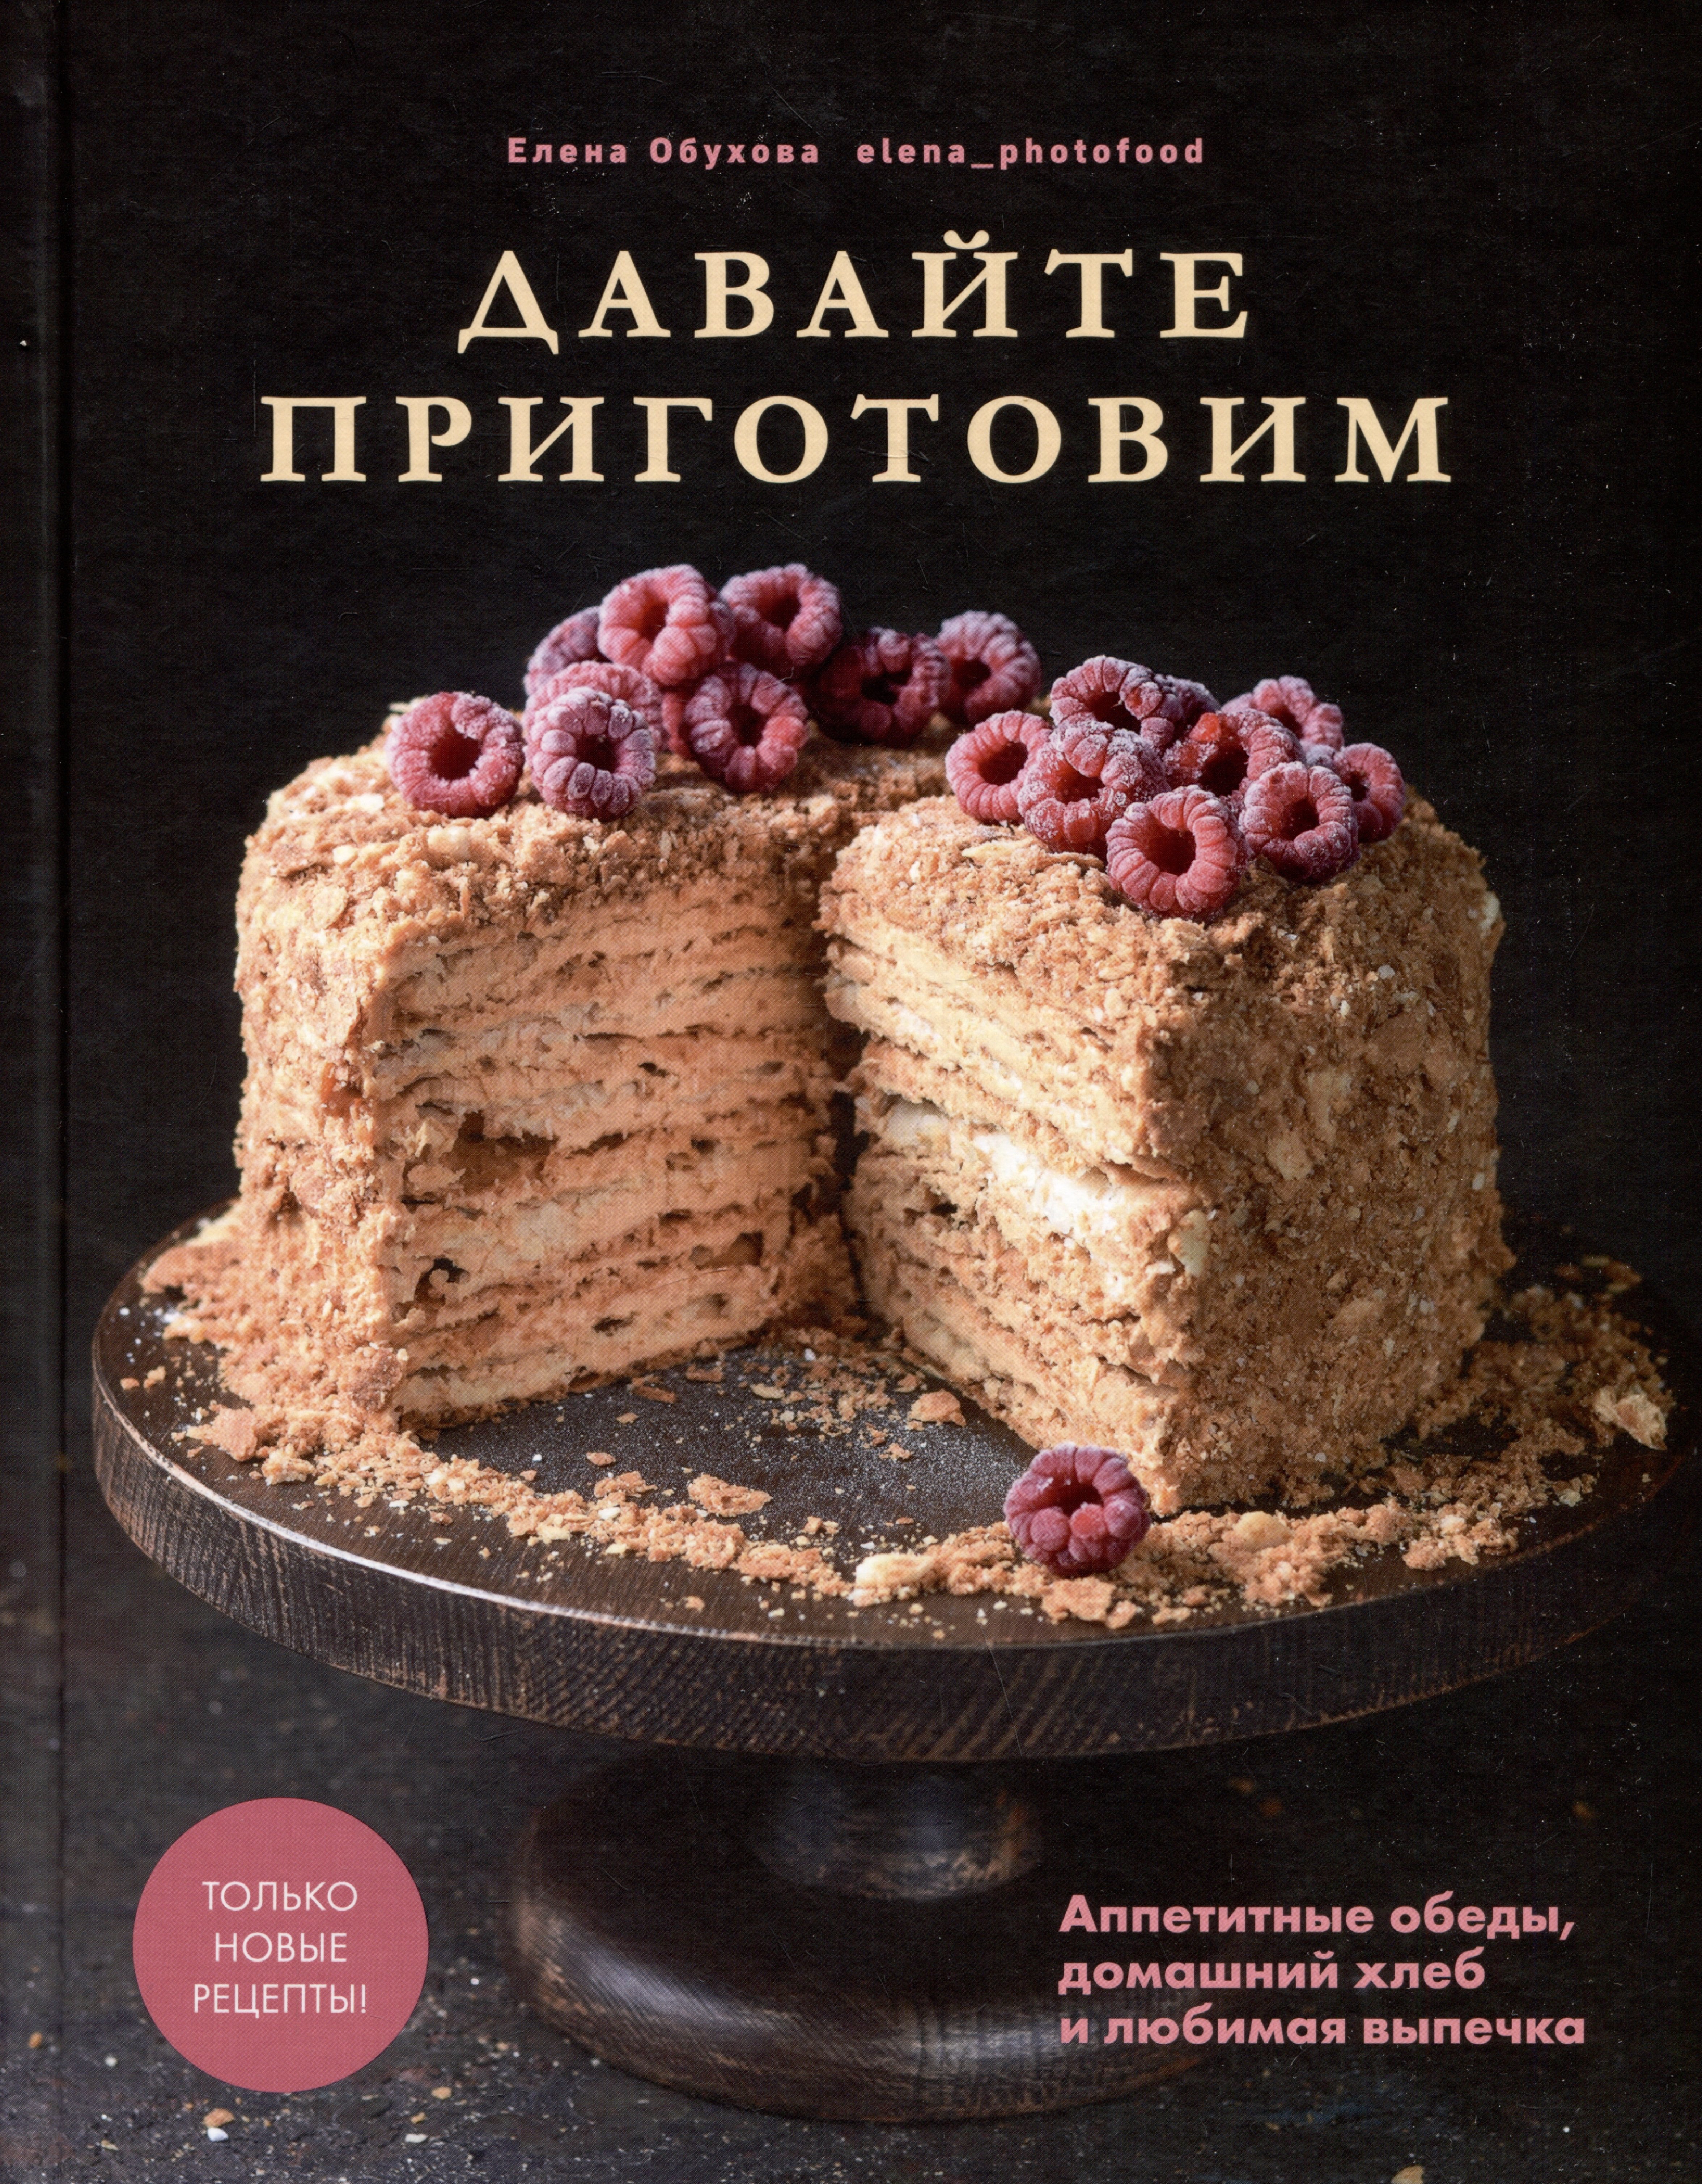 Анковский пирог - рецепт 1865 г. / Простой лимонный пирог для Льва Толстого